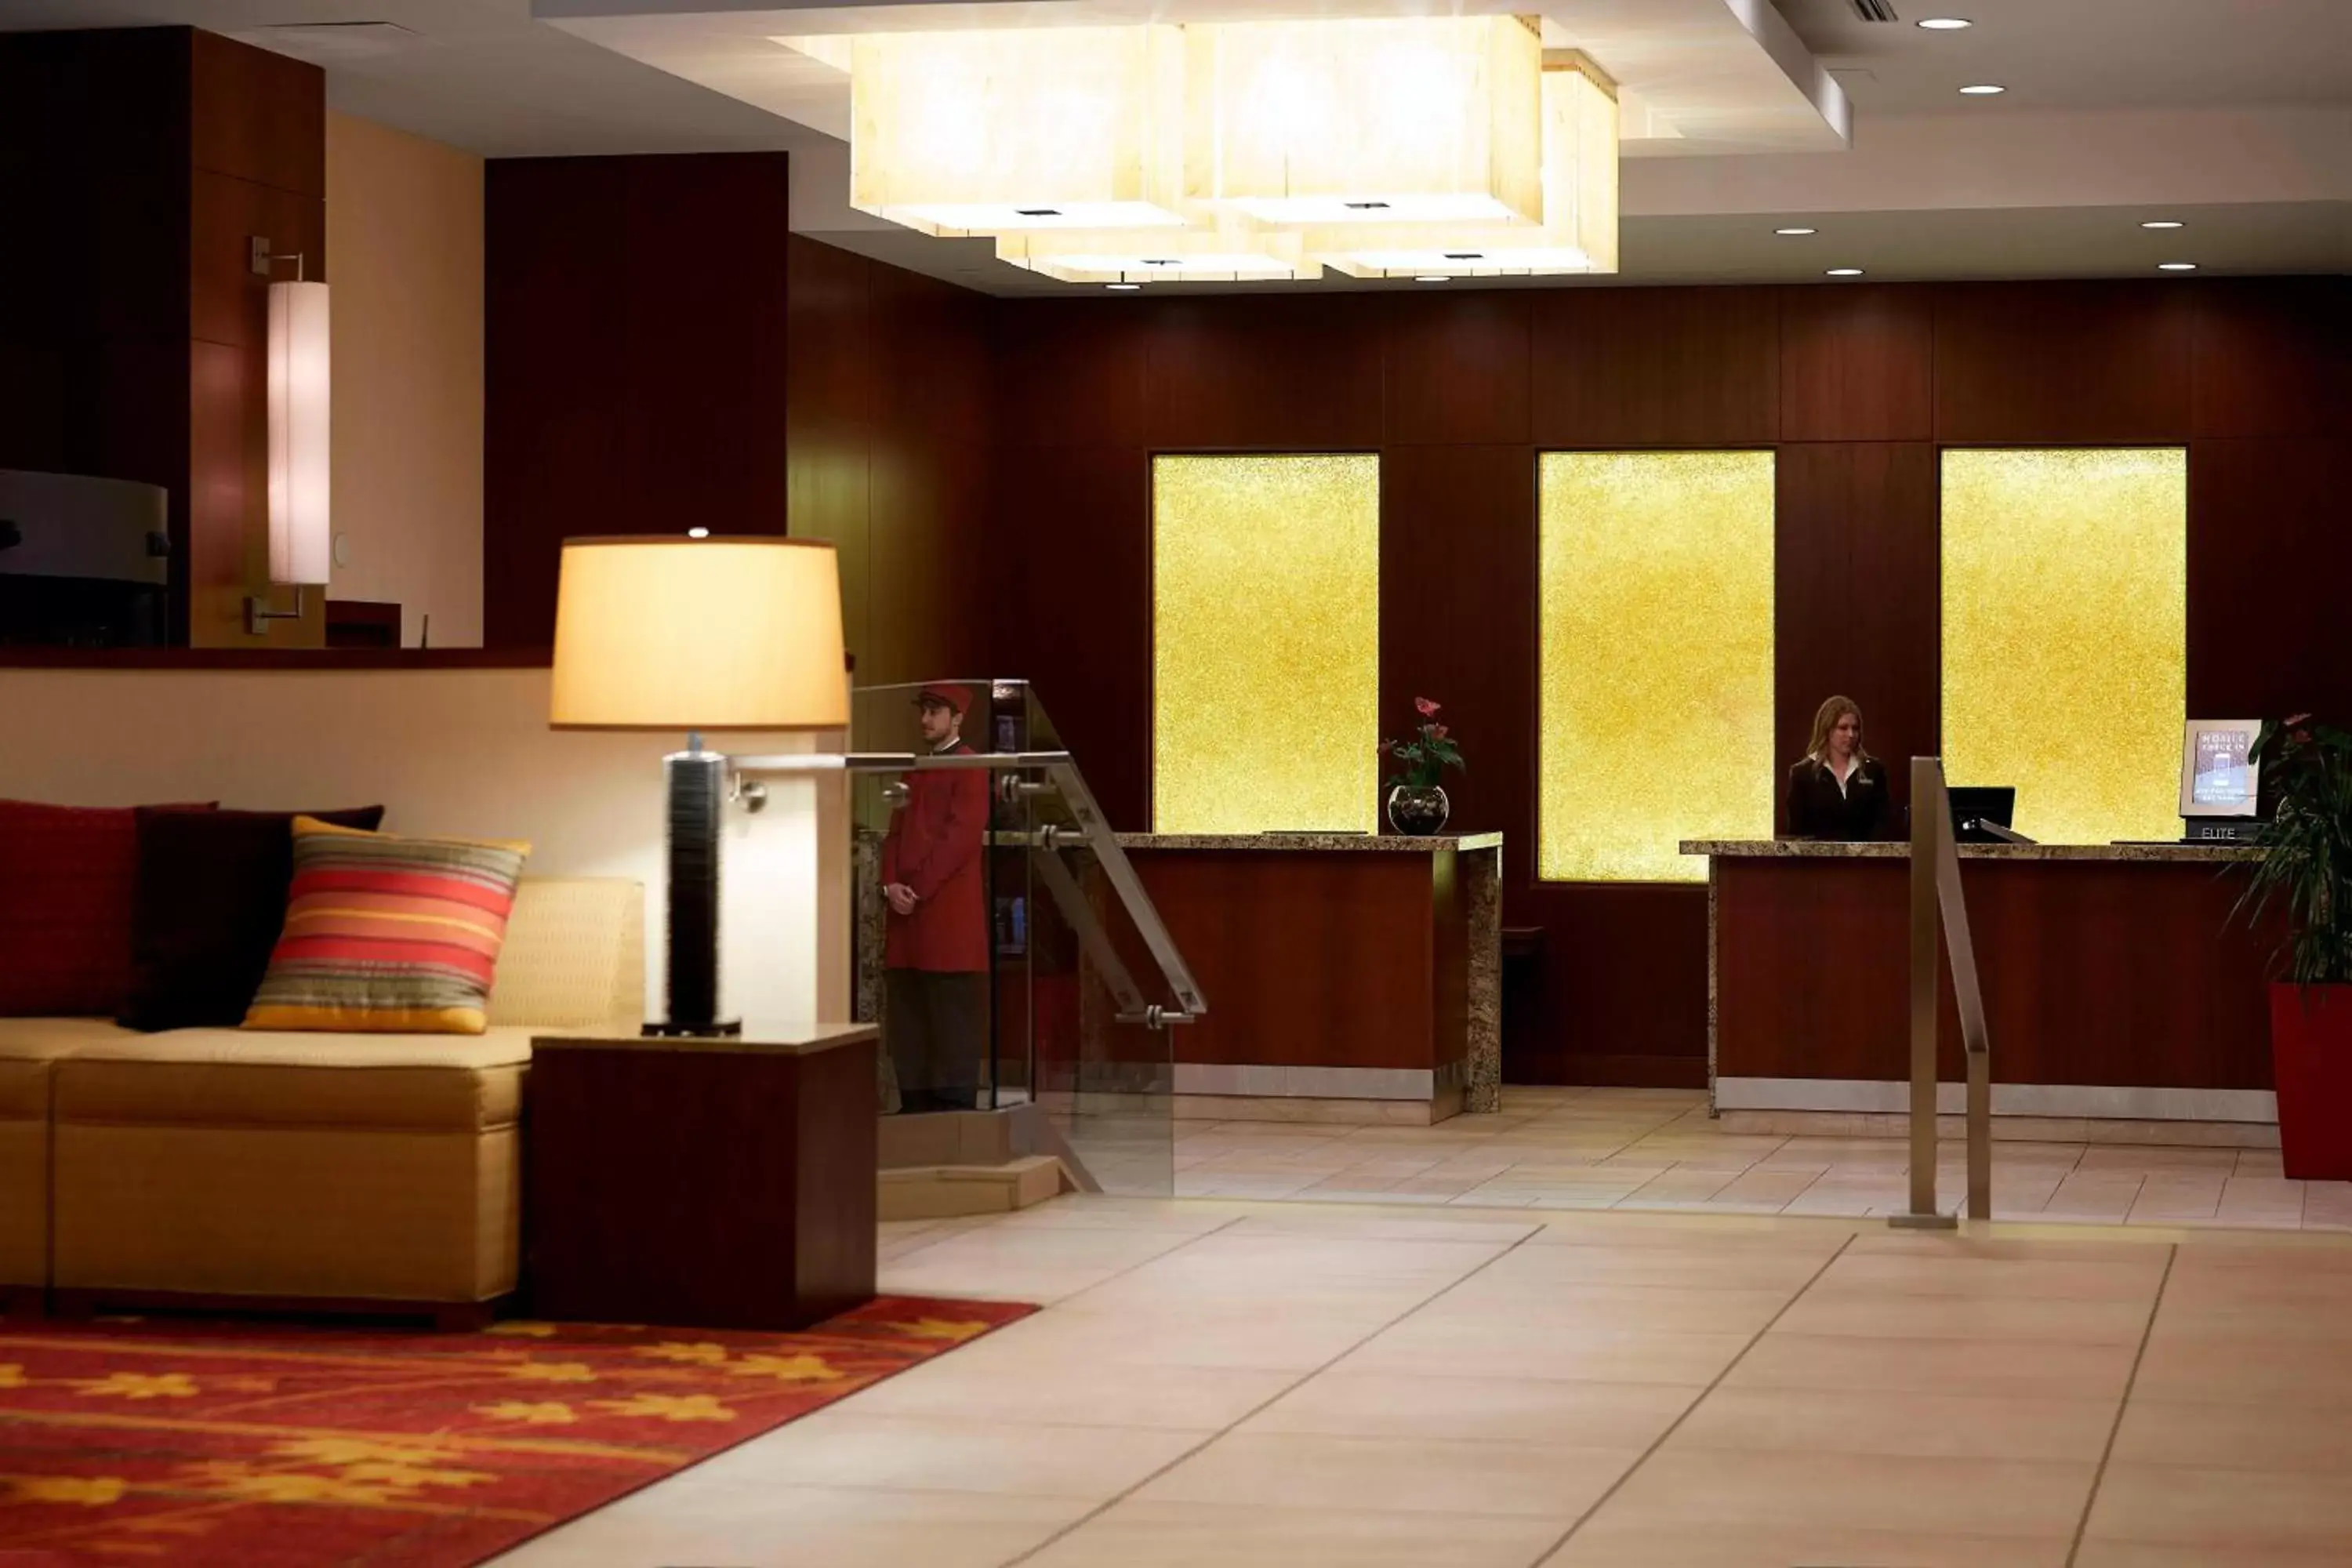 Lobby or reception, Lobby/Reception in Ottawa Marriott Hotel